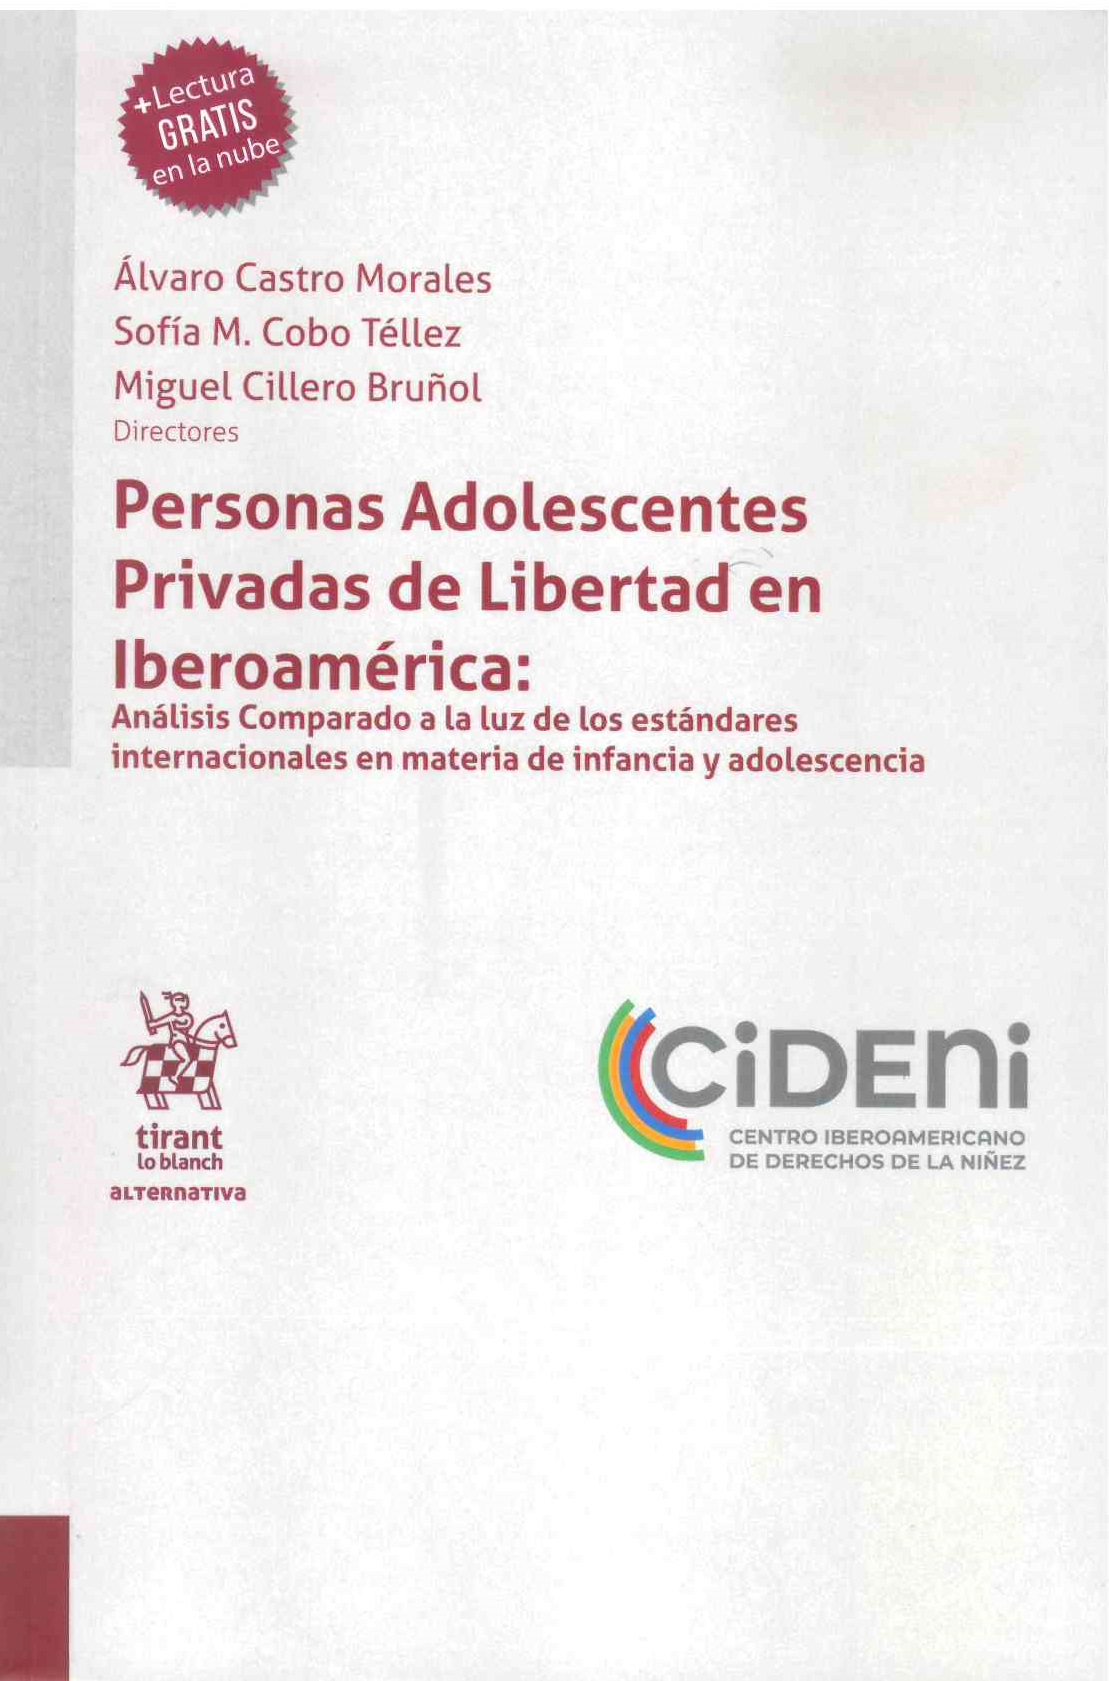 Personas adolescentes privadas de libertad en Iberoamérica: Análisis comparado a la luz de los estándares internacionales en materia de infancia y adolescencia.